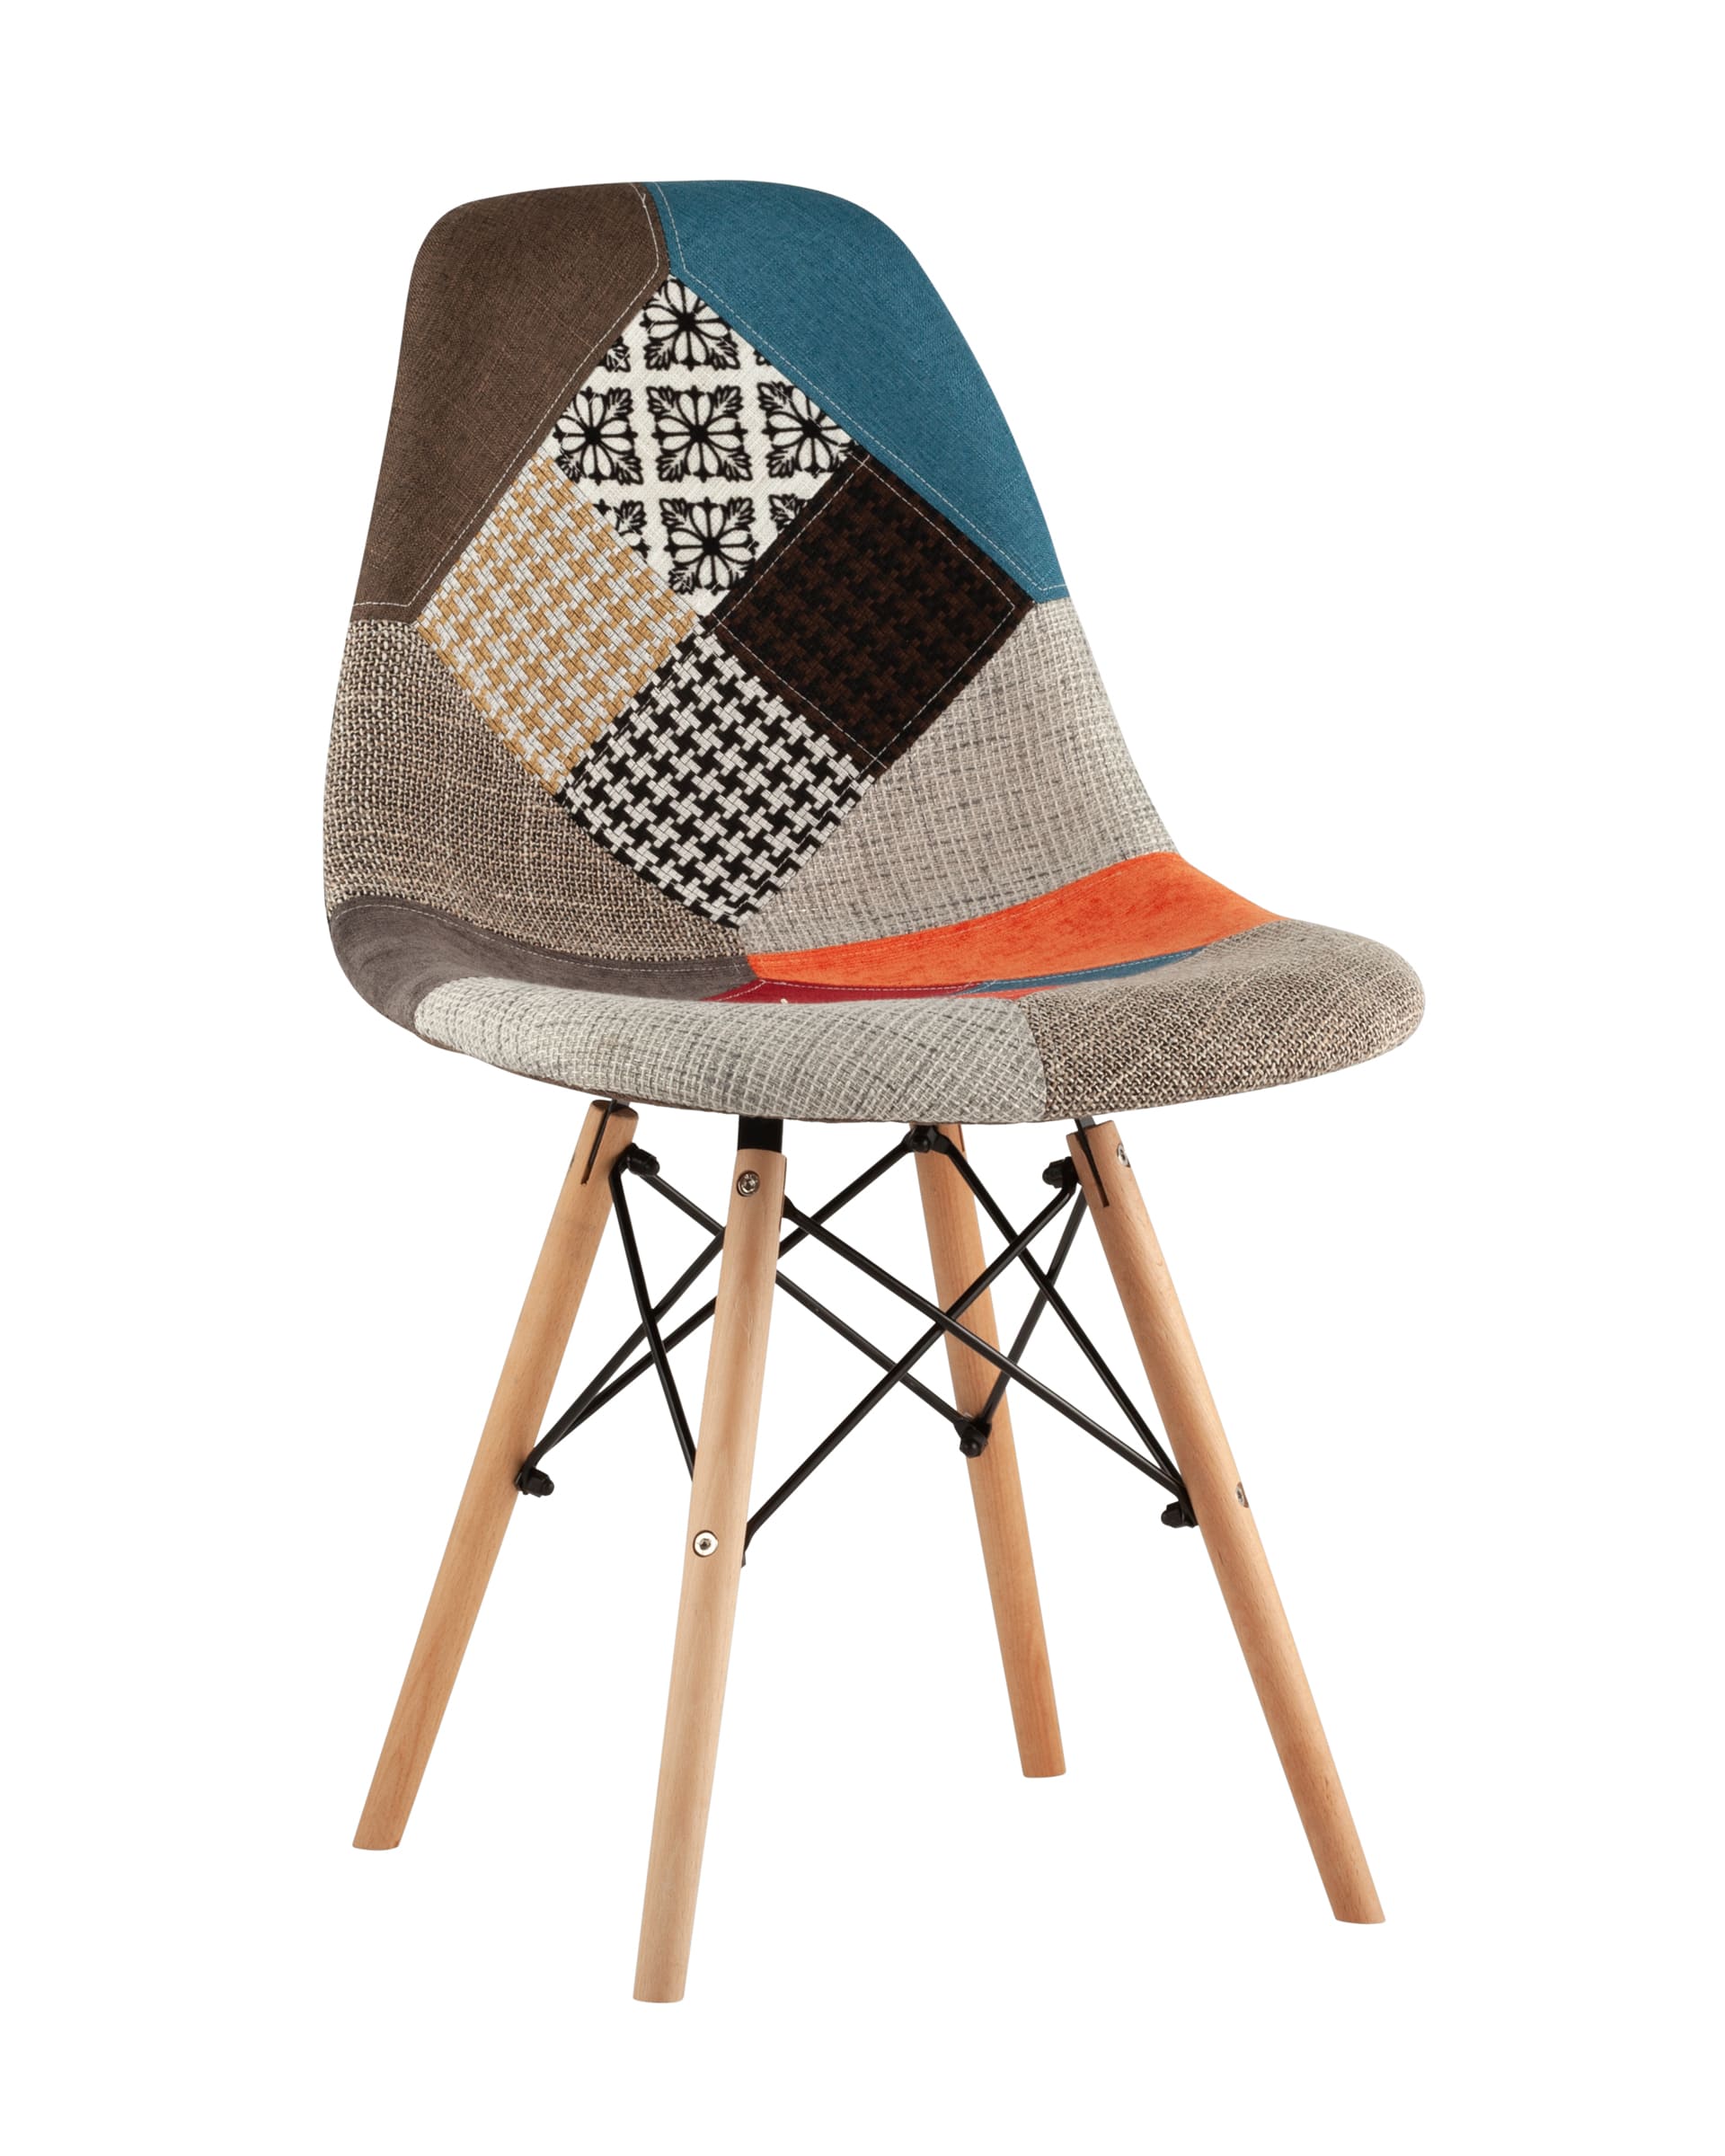 Stool Group Eames DSW в тканевой обивке в стиле пэчворк, сиденье платиковое, ножки деревянные